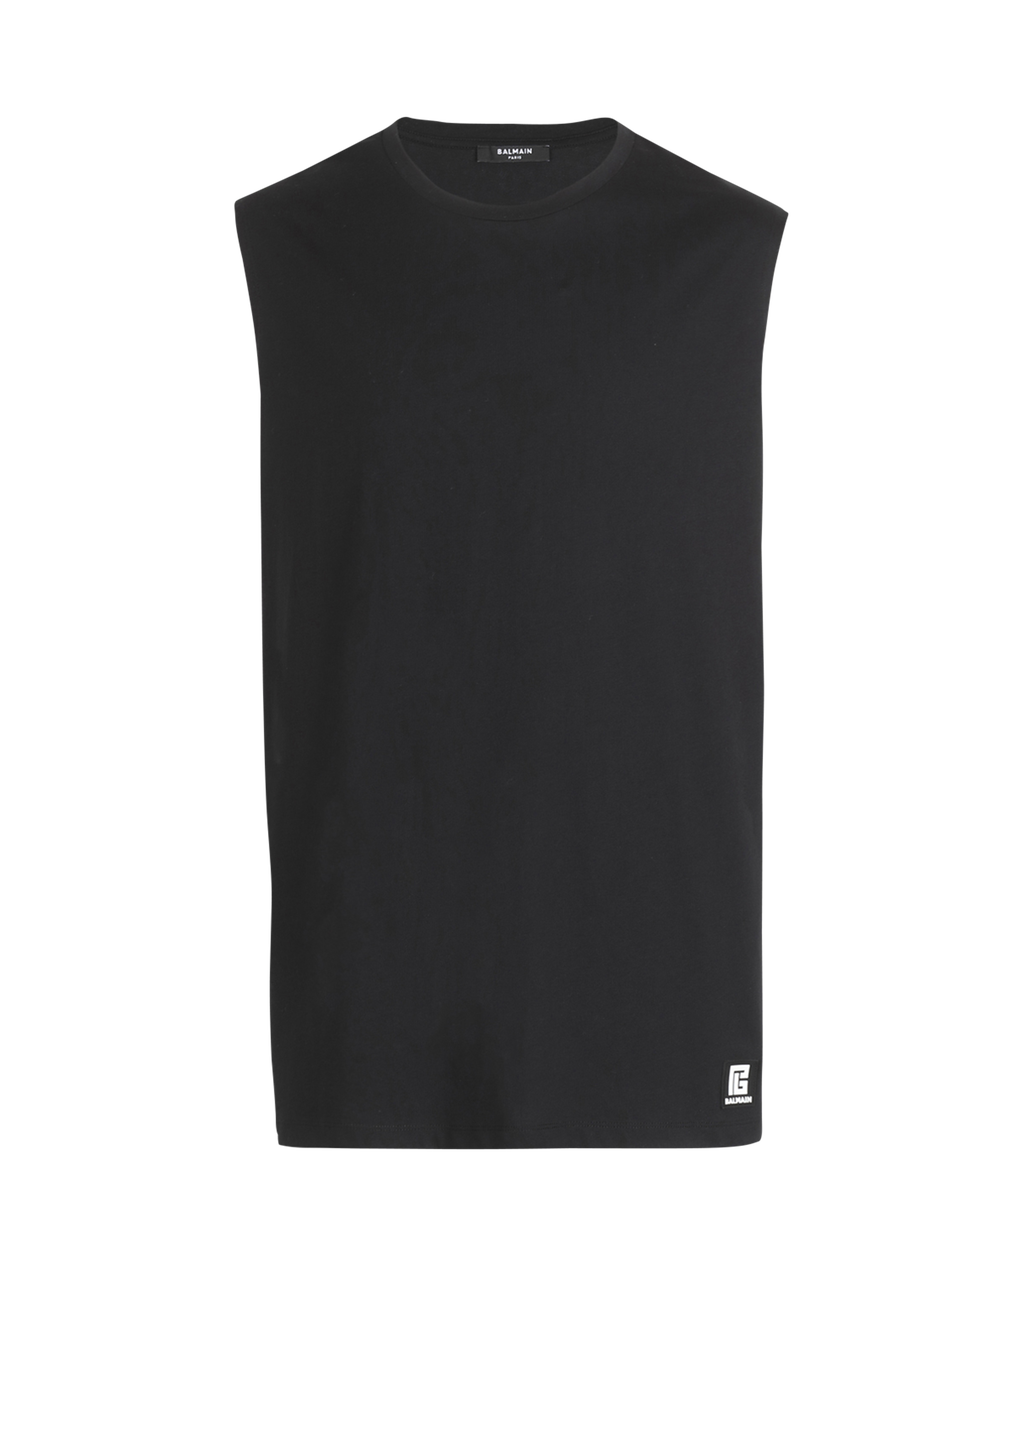 Balmain 로고 프린트 디테일 코튼 티셔츠, 검정색, hi-res